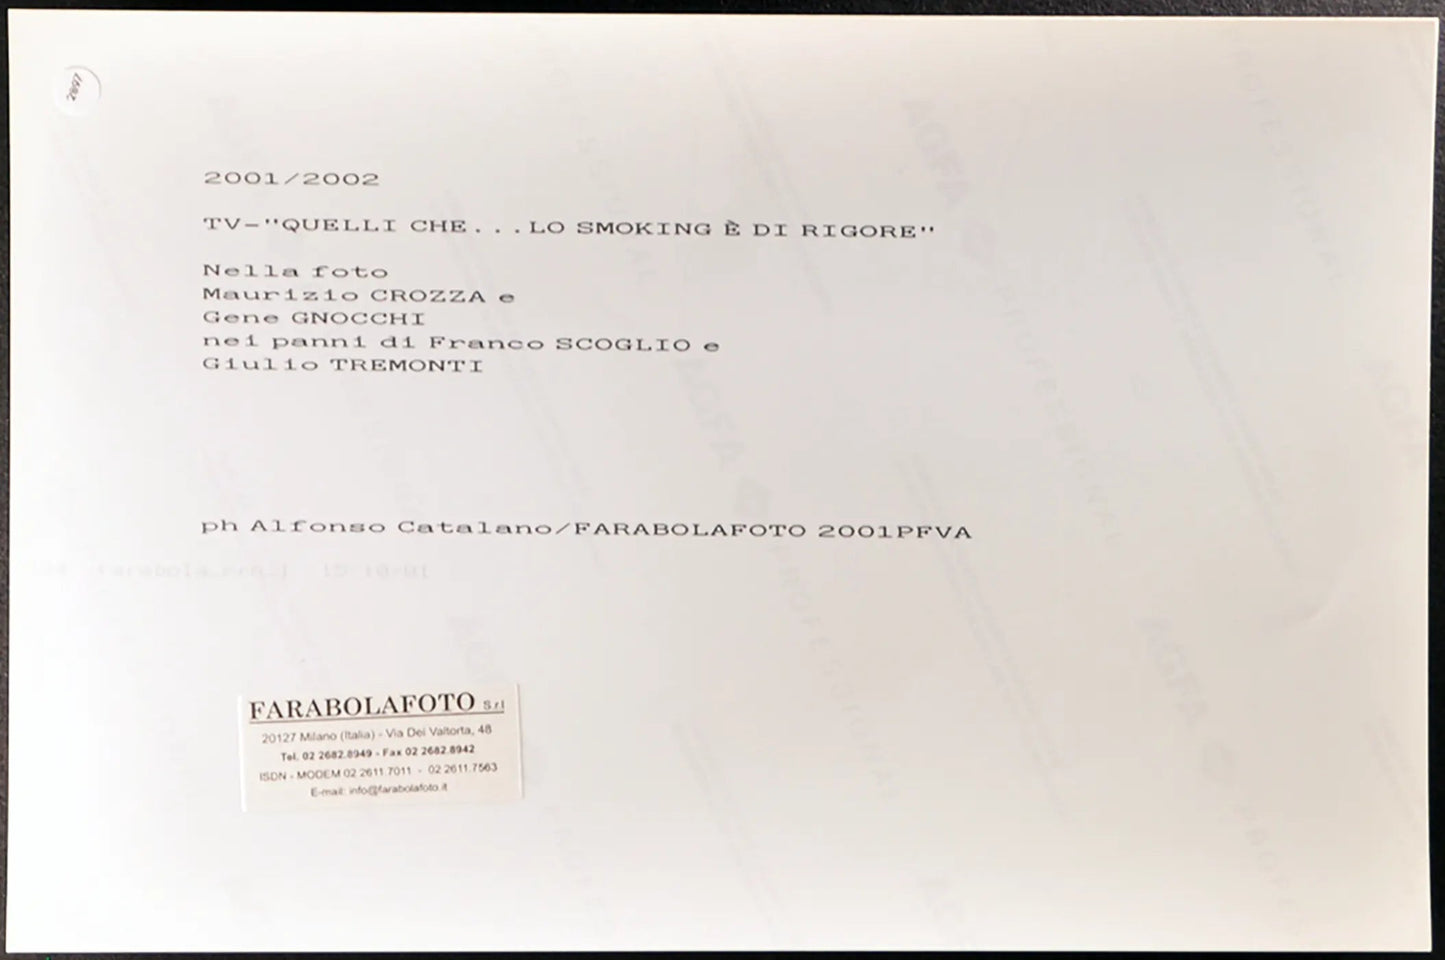 Crozza Gnocchi e Tremonti Quelli che... Ft 2897 - Stampa 20x30 cm - Farabola Stampa digitale